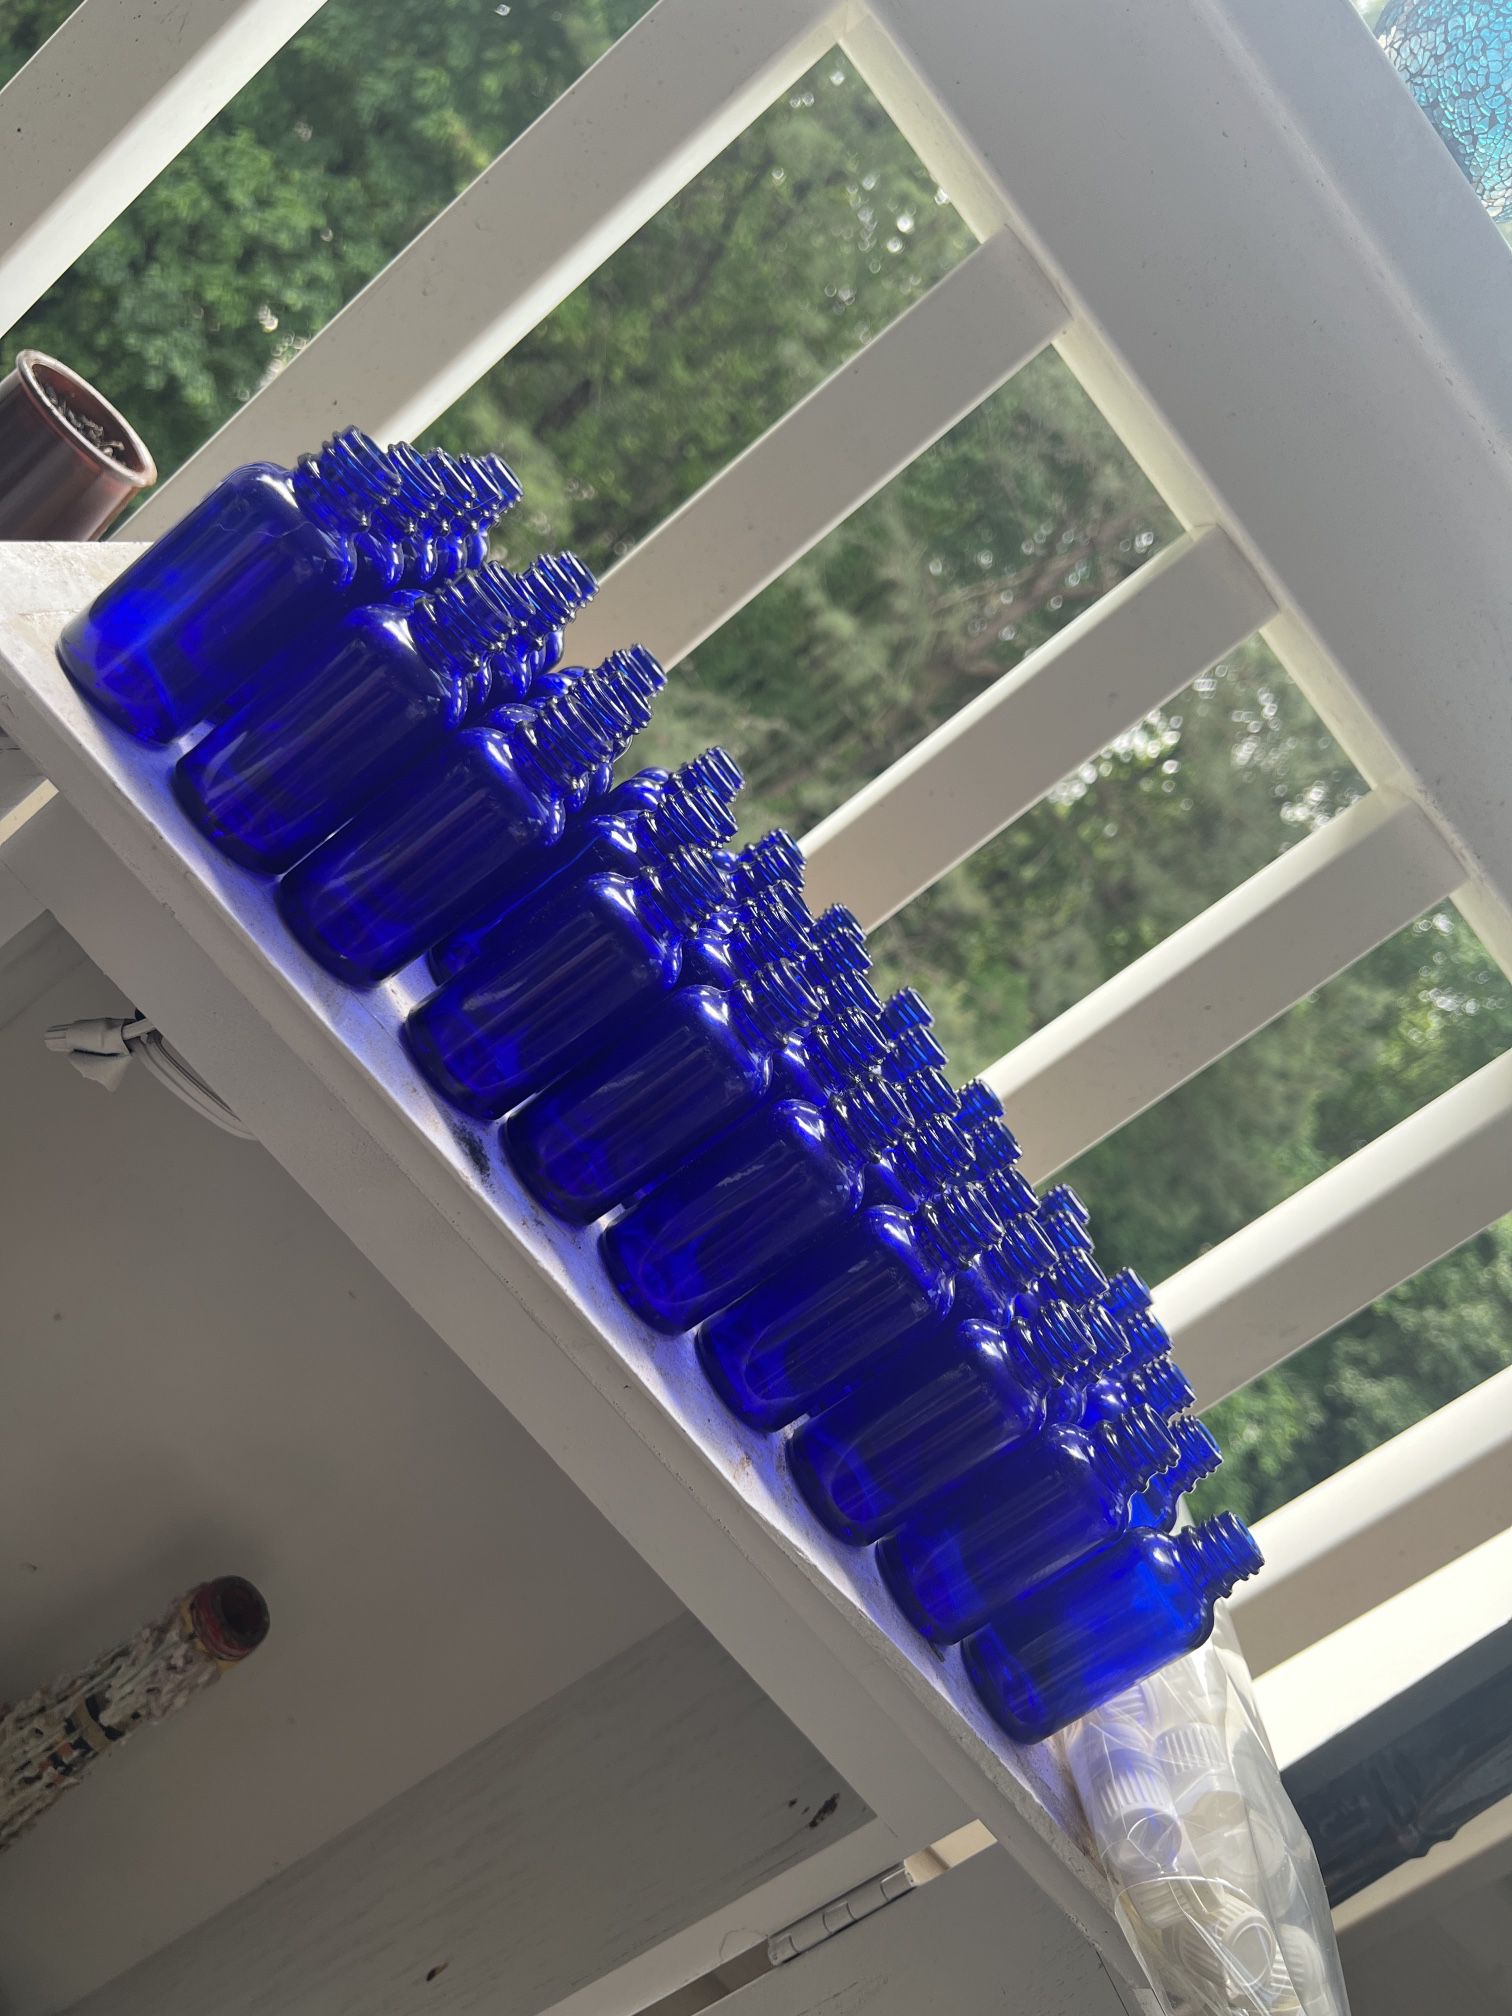 1oz Blue Glass Bottles 